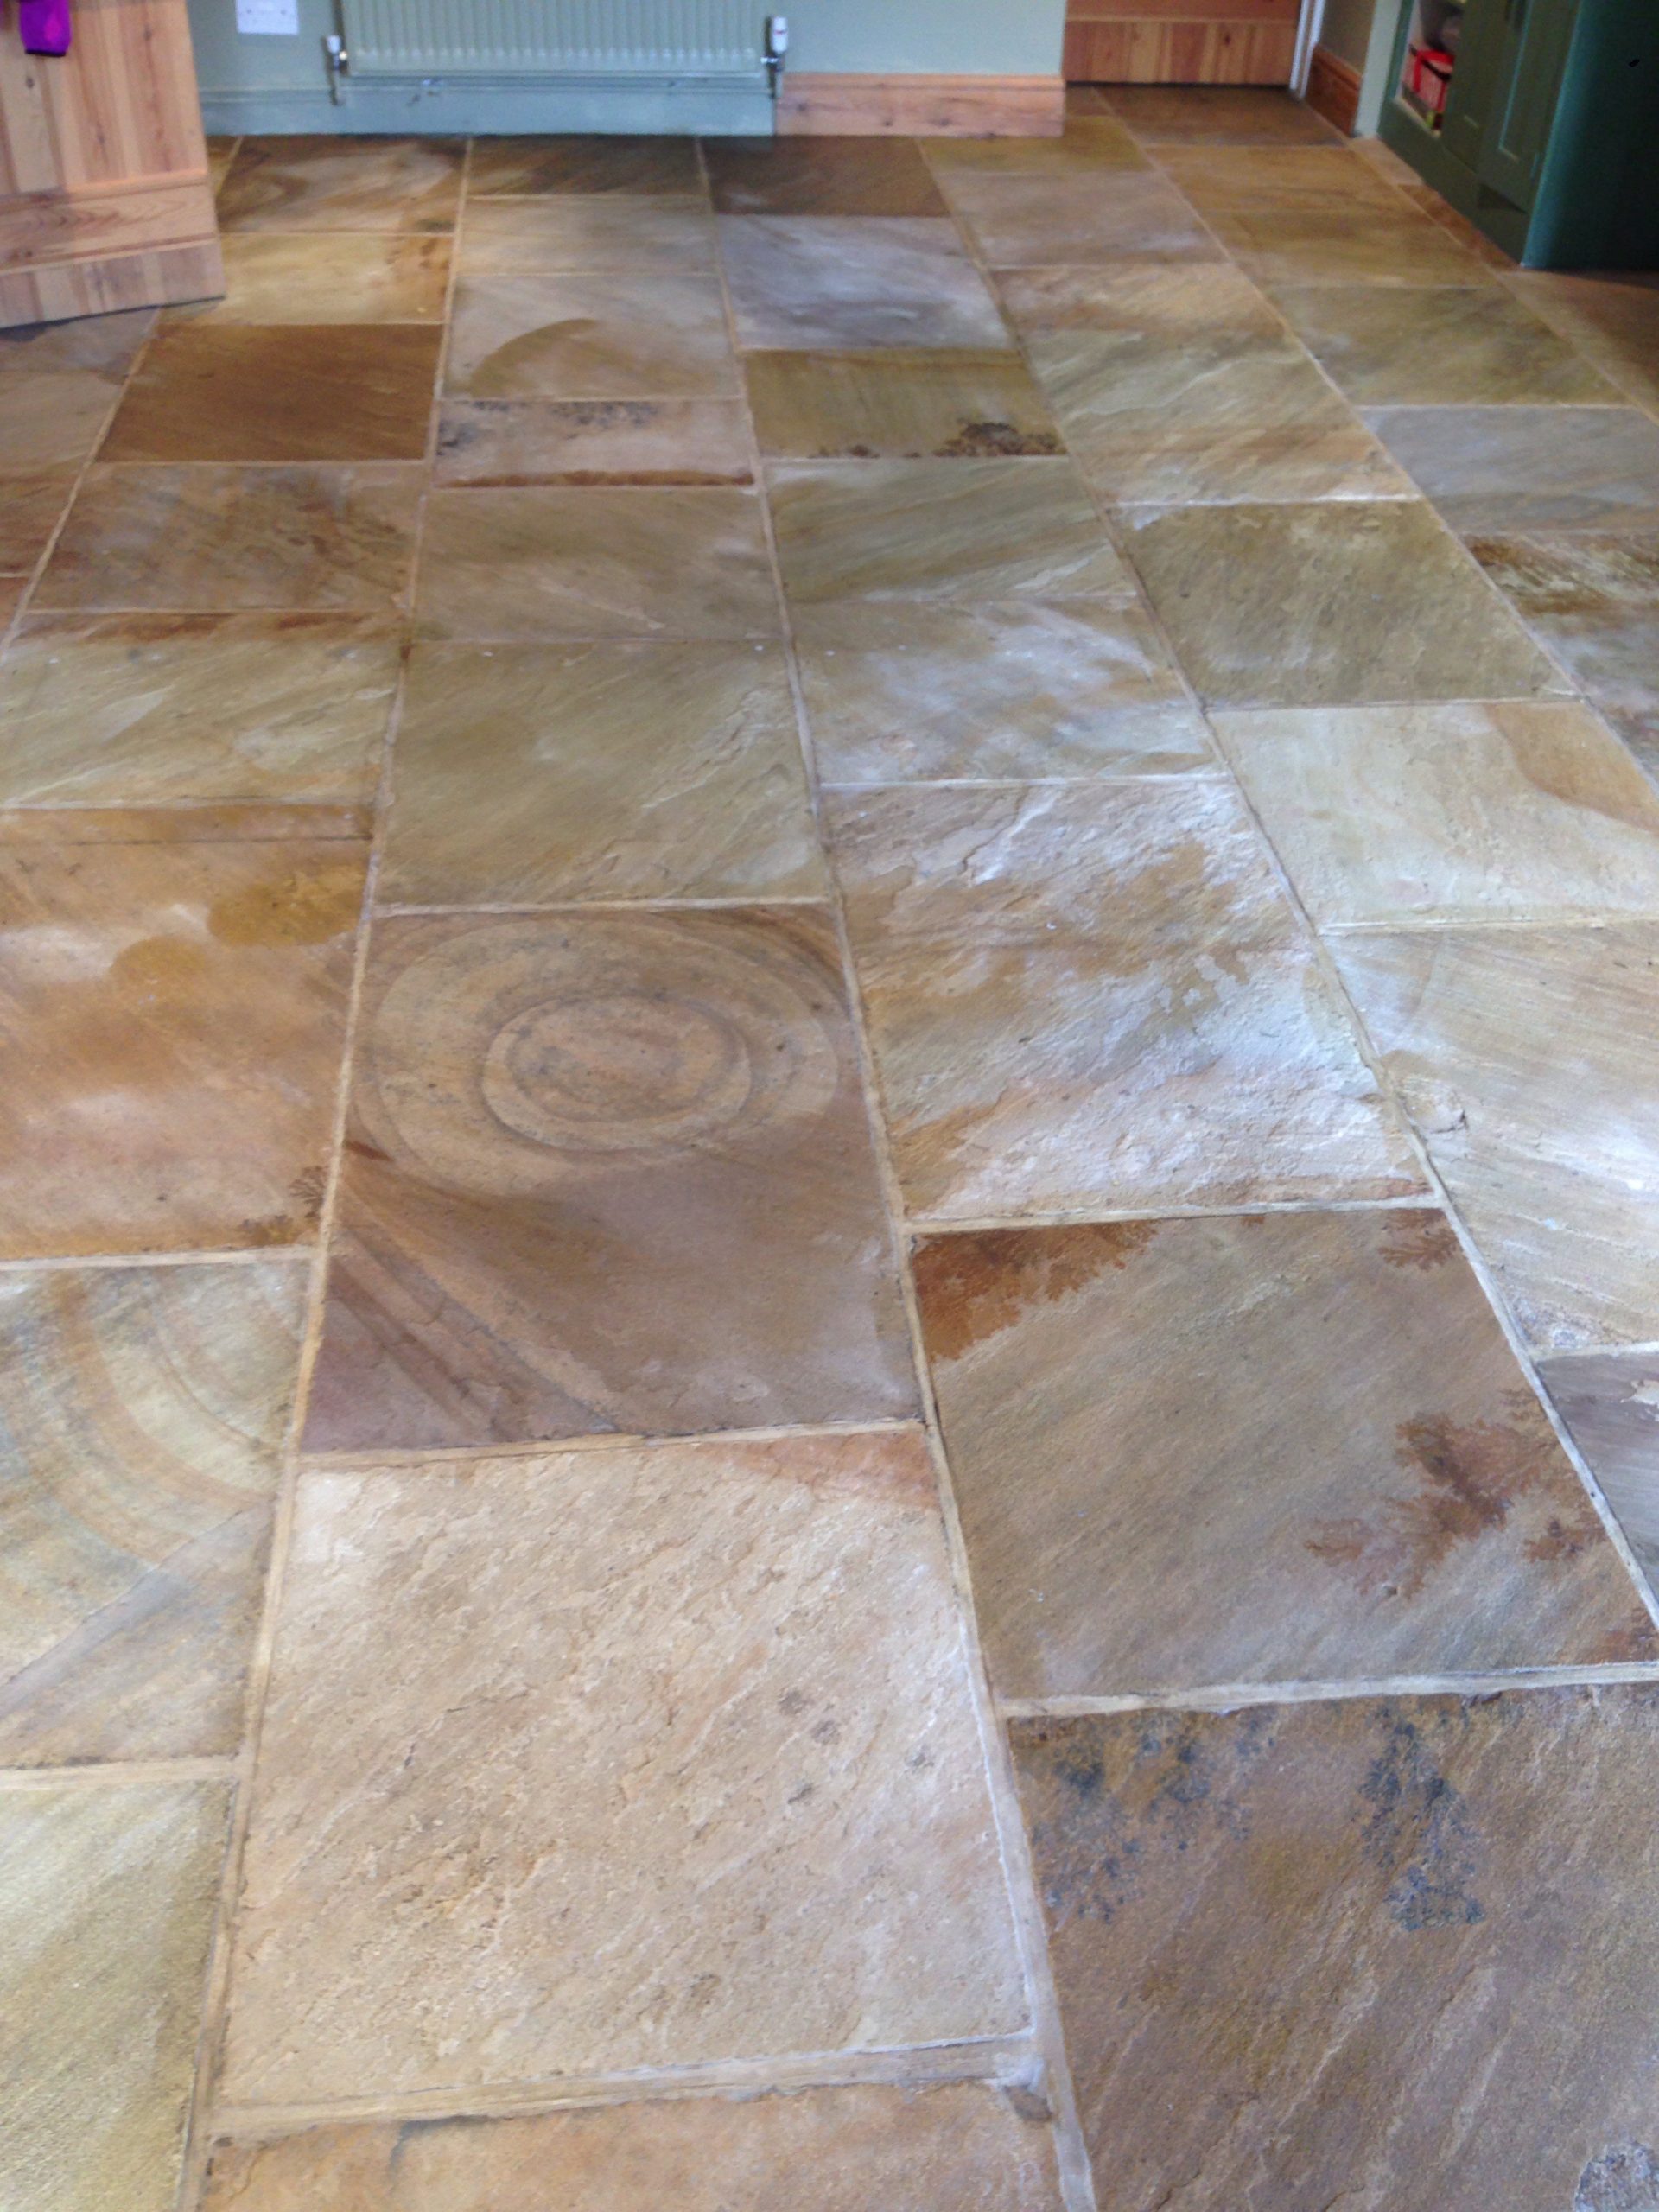 Restored York stone floor tiles